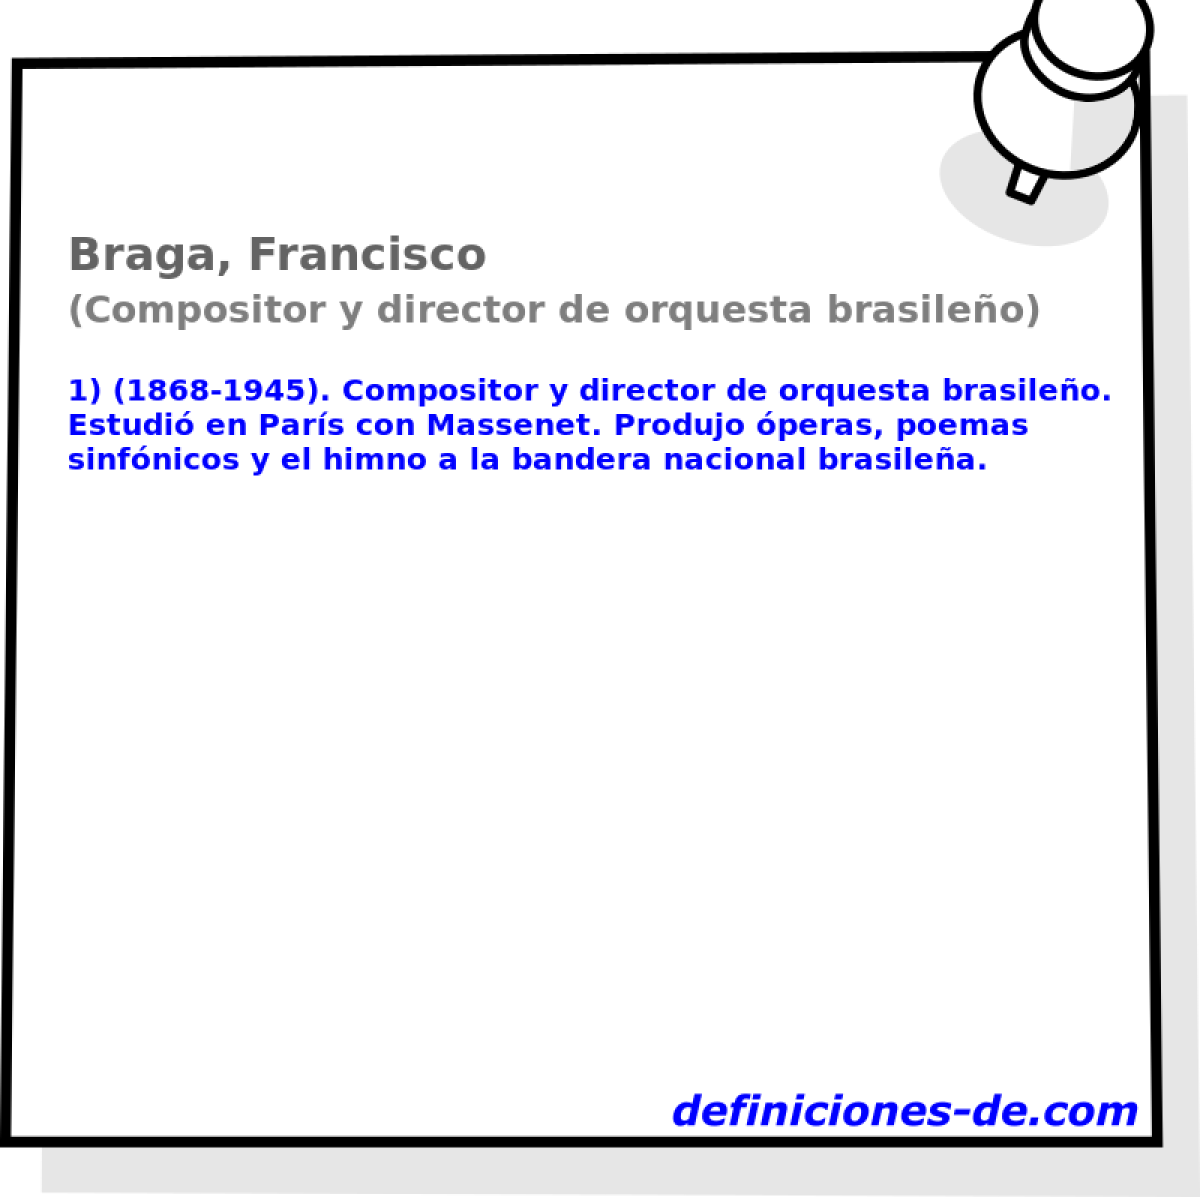 Braga, Francisco (Compositor y director de orquesta brasileo)